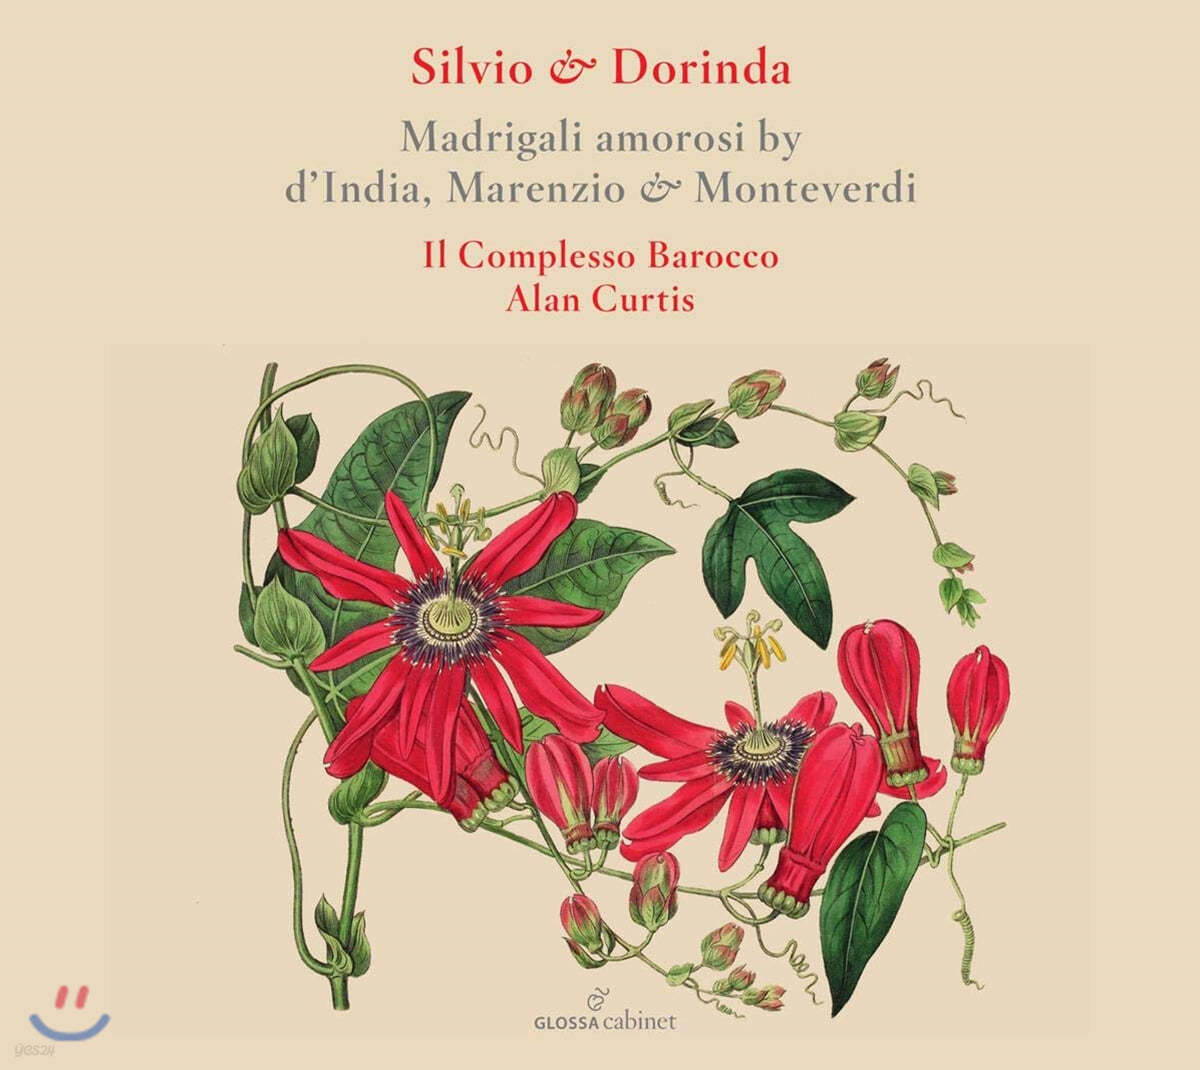 Il Complesso Barocco 딘디아 / 마렌치오 / 몬테베르디: 마드리갈 (D'India / Marnezio / Monteverdi: Madrigali Amorosi) 